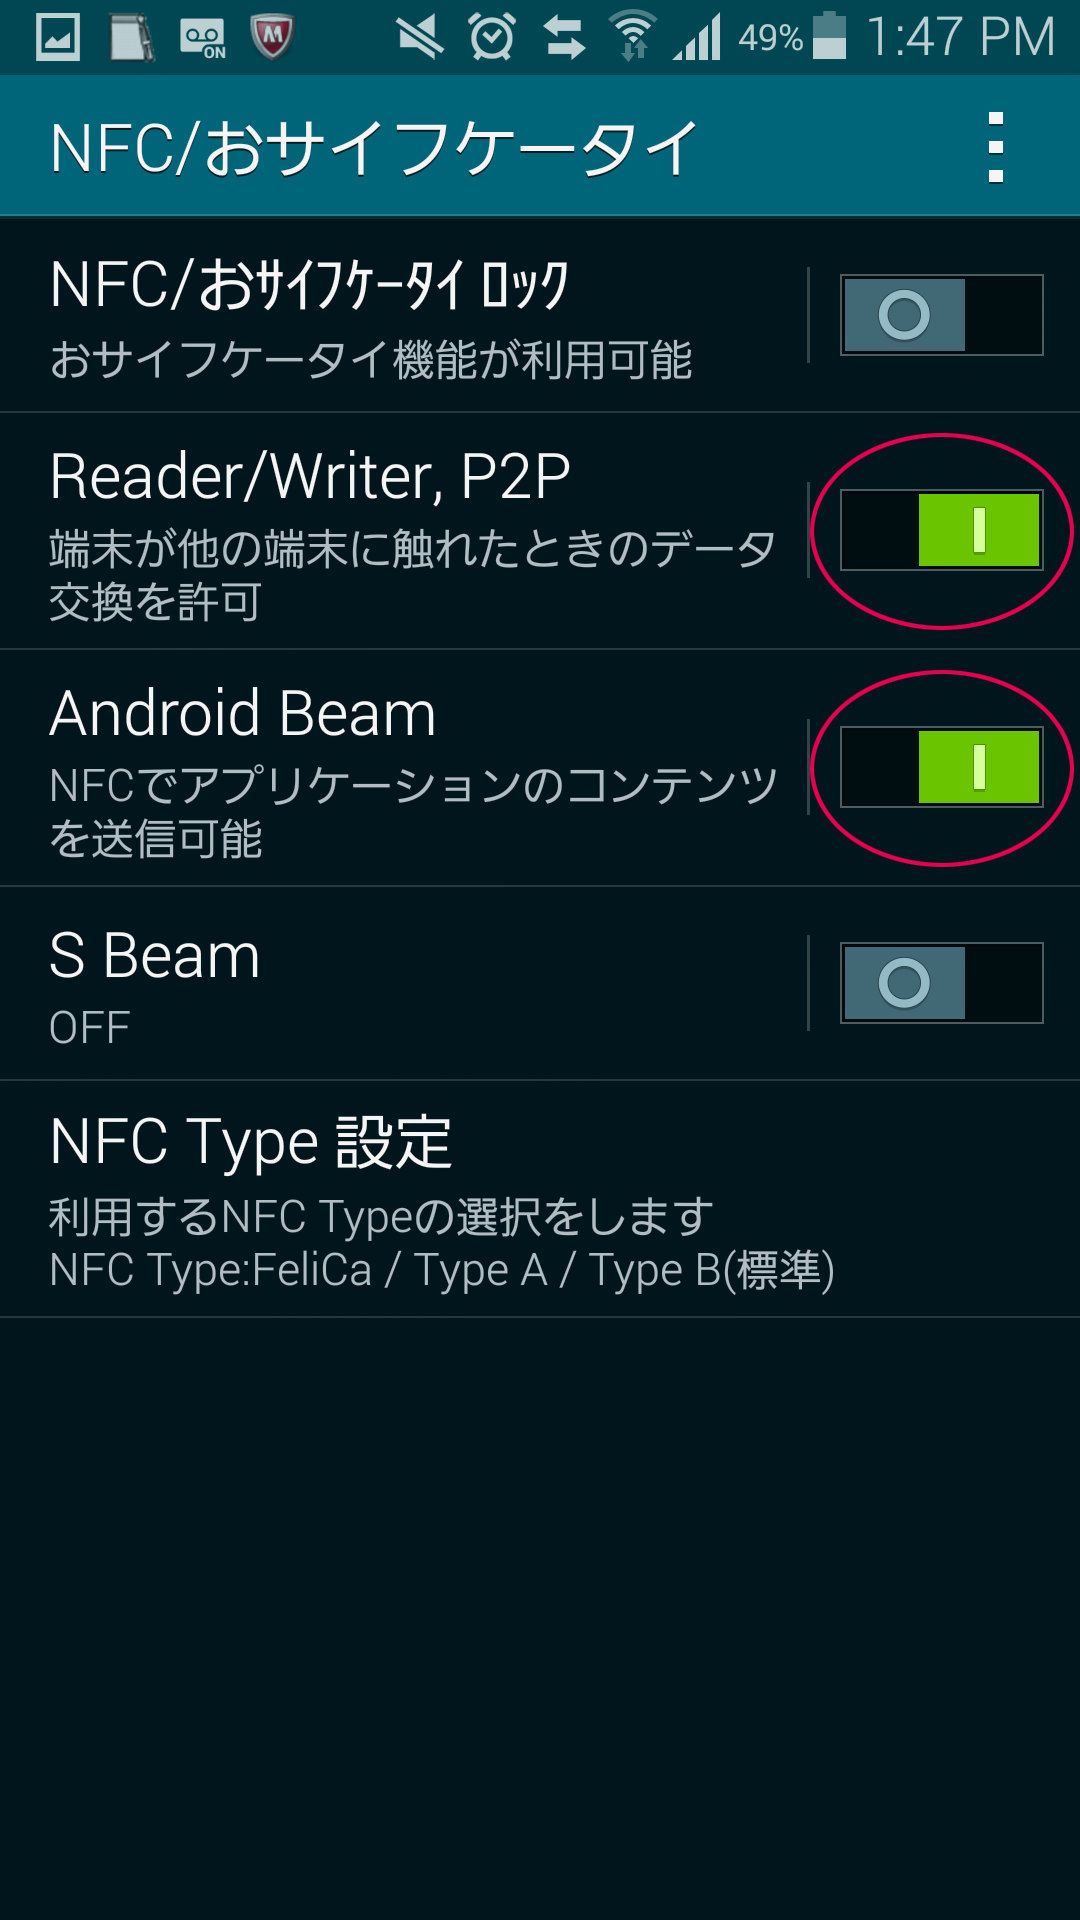 「NFC／おサイフケータイ」の設定